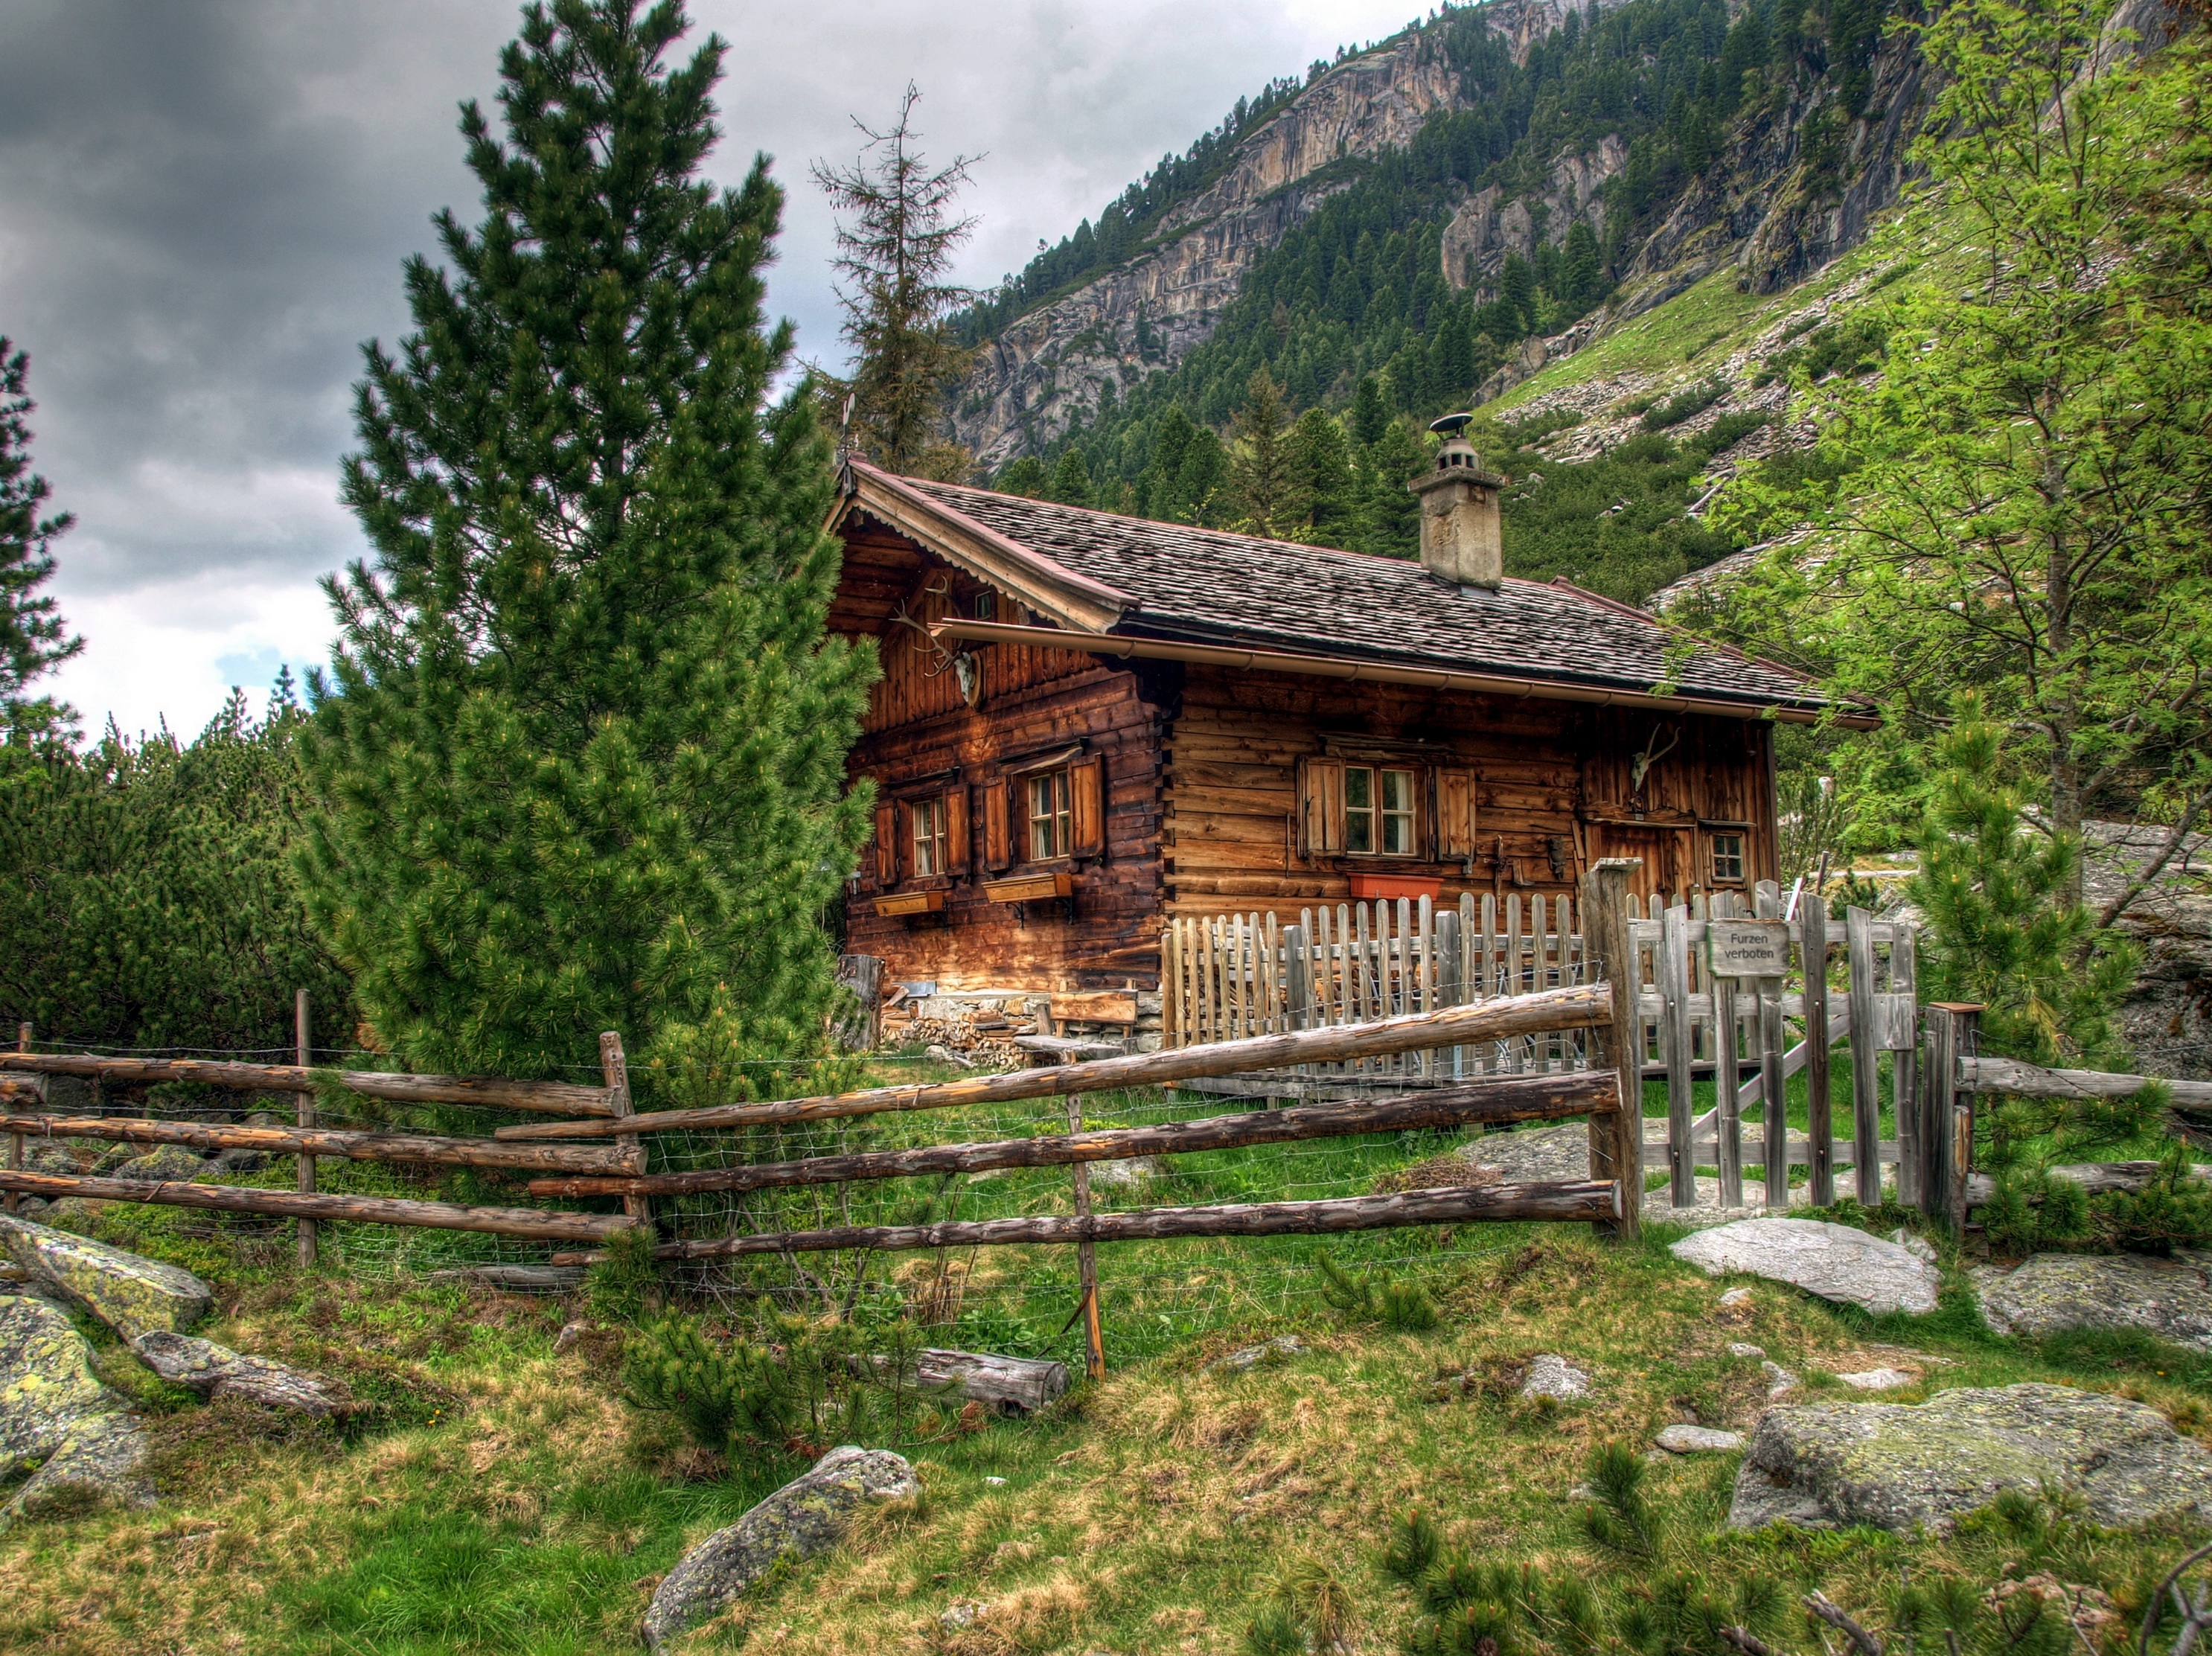 austria, alps, landscape, nature, house, wooden fence